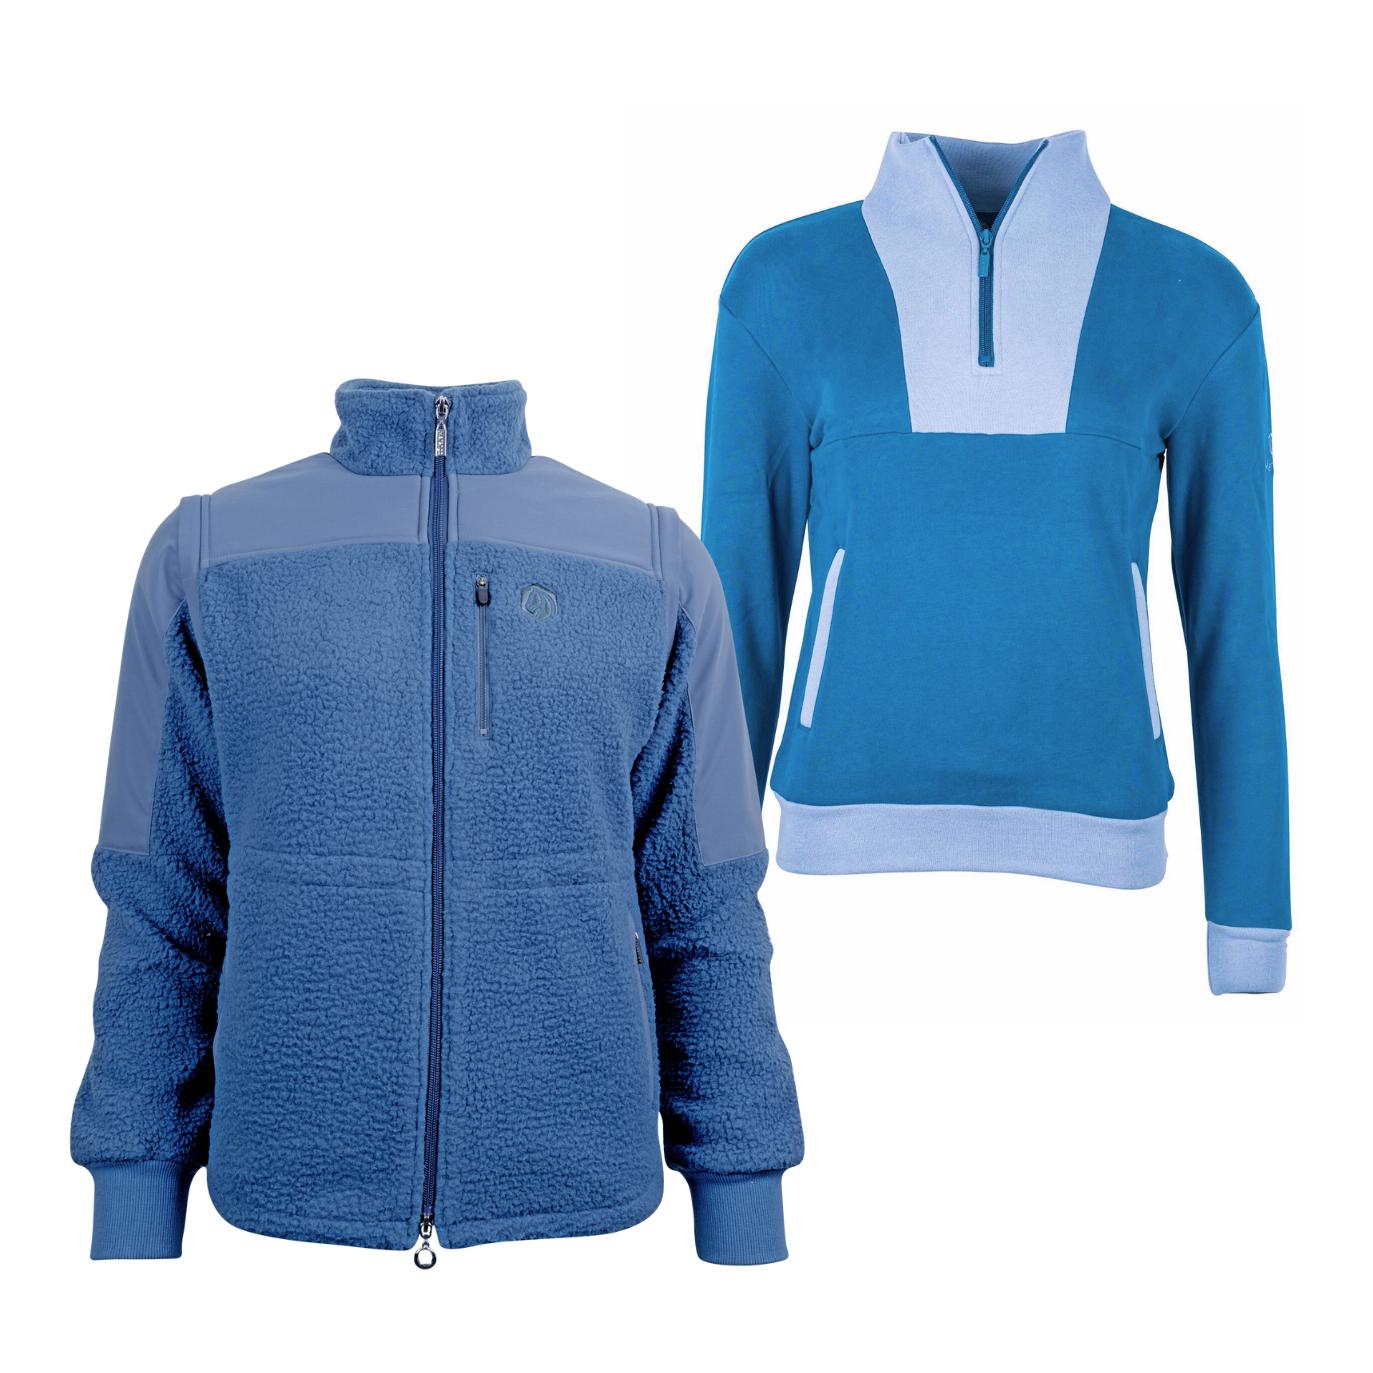 Marengo Outfit-Set Cosy Rides - Teddyfleece-Jacke & Zip Sweatshirt Farbe: Calm Blue / Ocean Blue, Grösse Pullover: L, Grösse Jacke: XS von Marengo